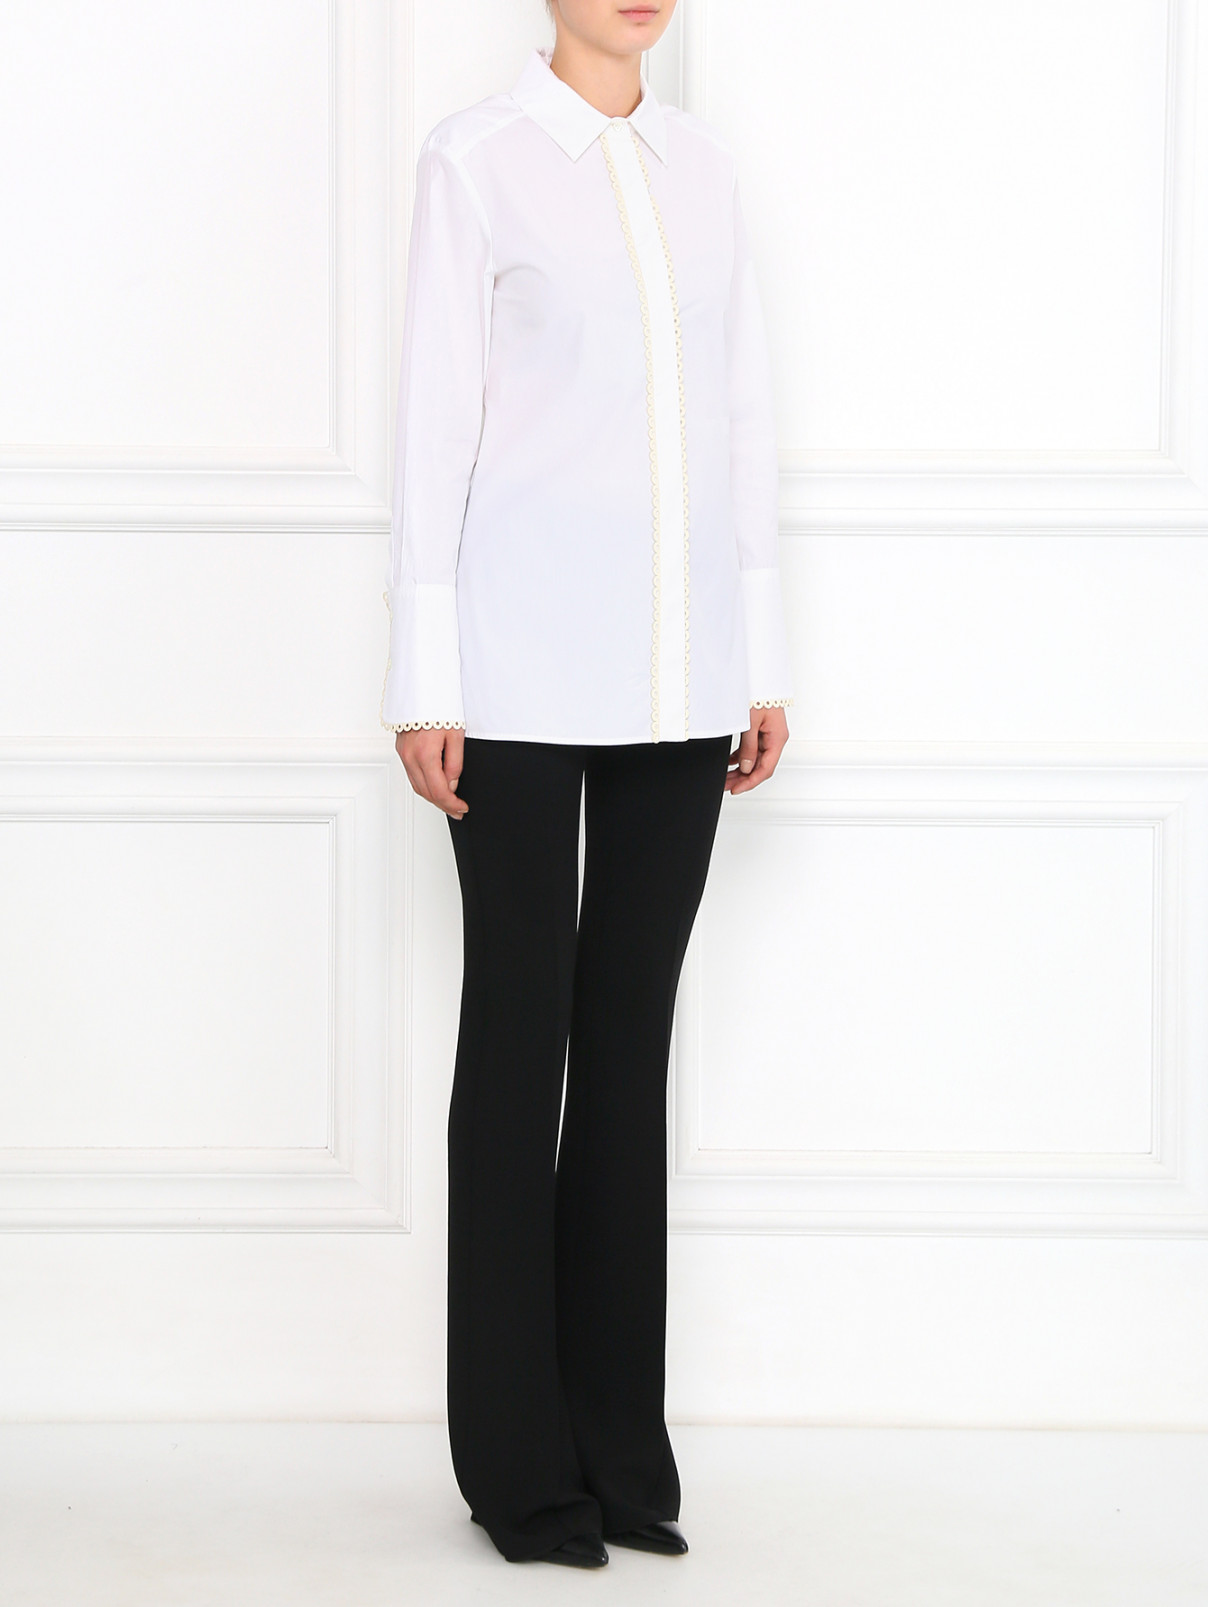 Блуза из хлопка с декоративной отделкой Sportmax  –  Модель Общий вид  – Цвет:  Белый